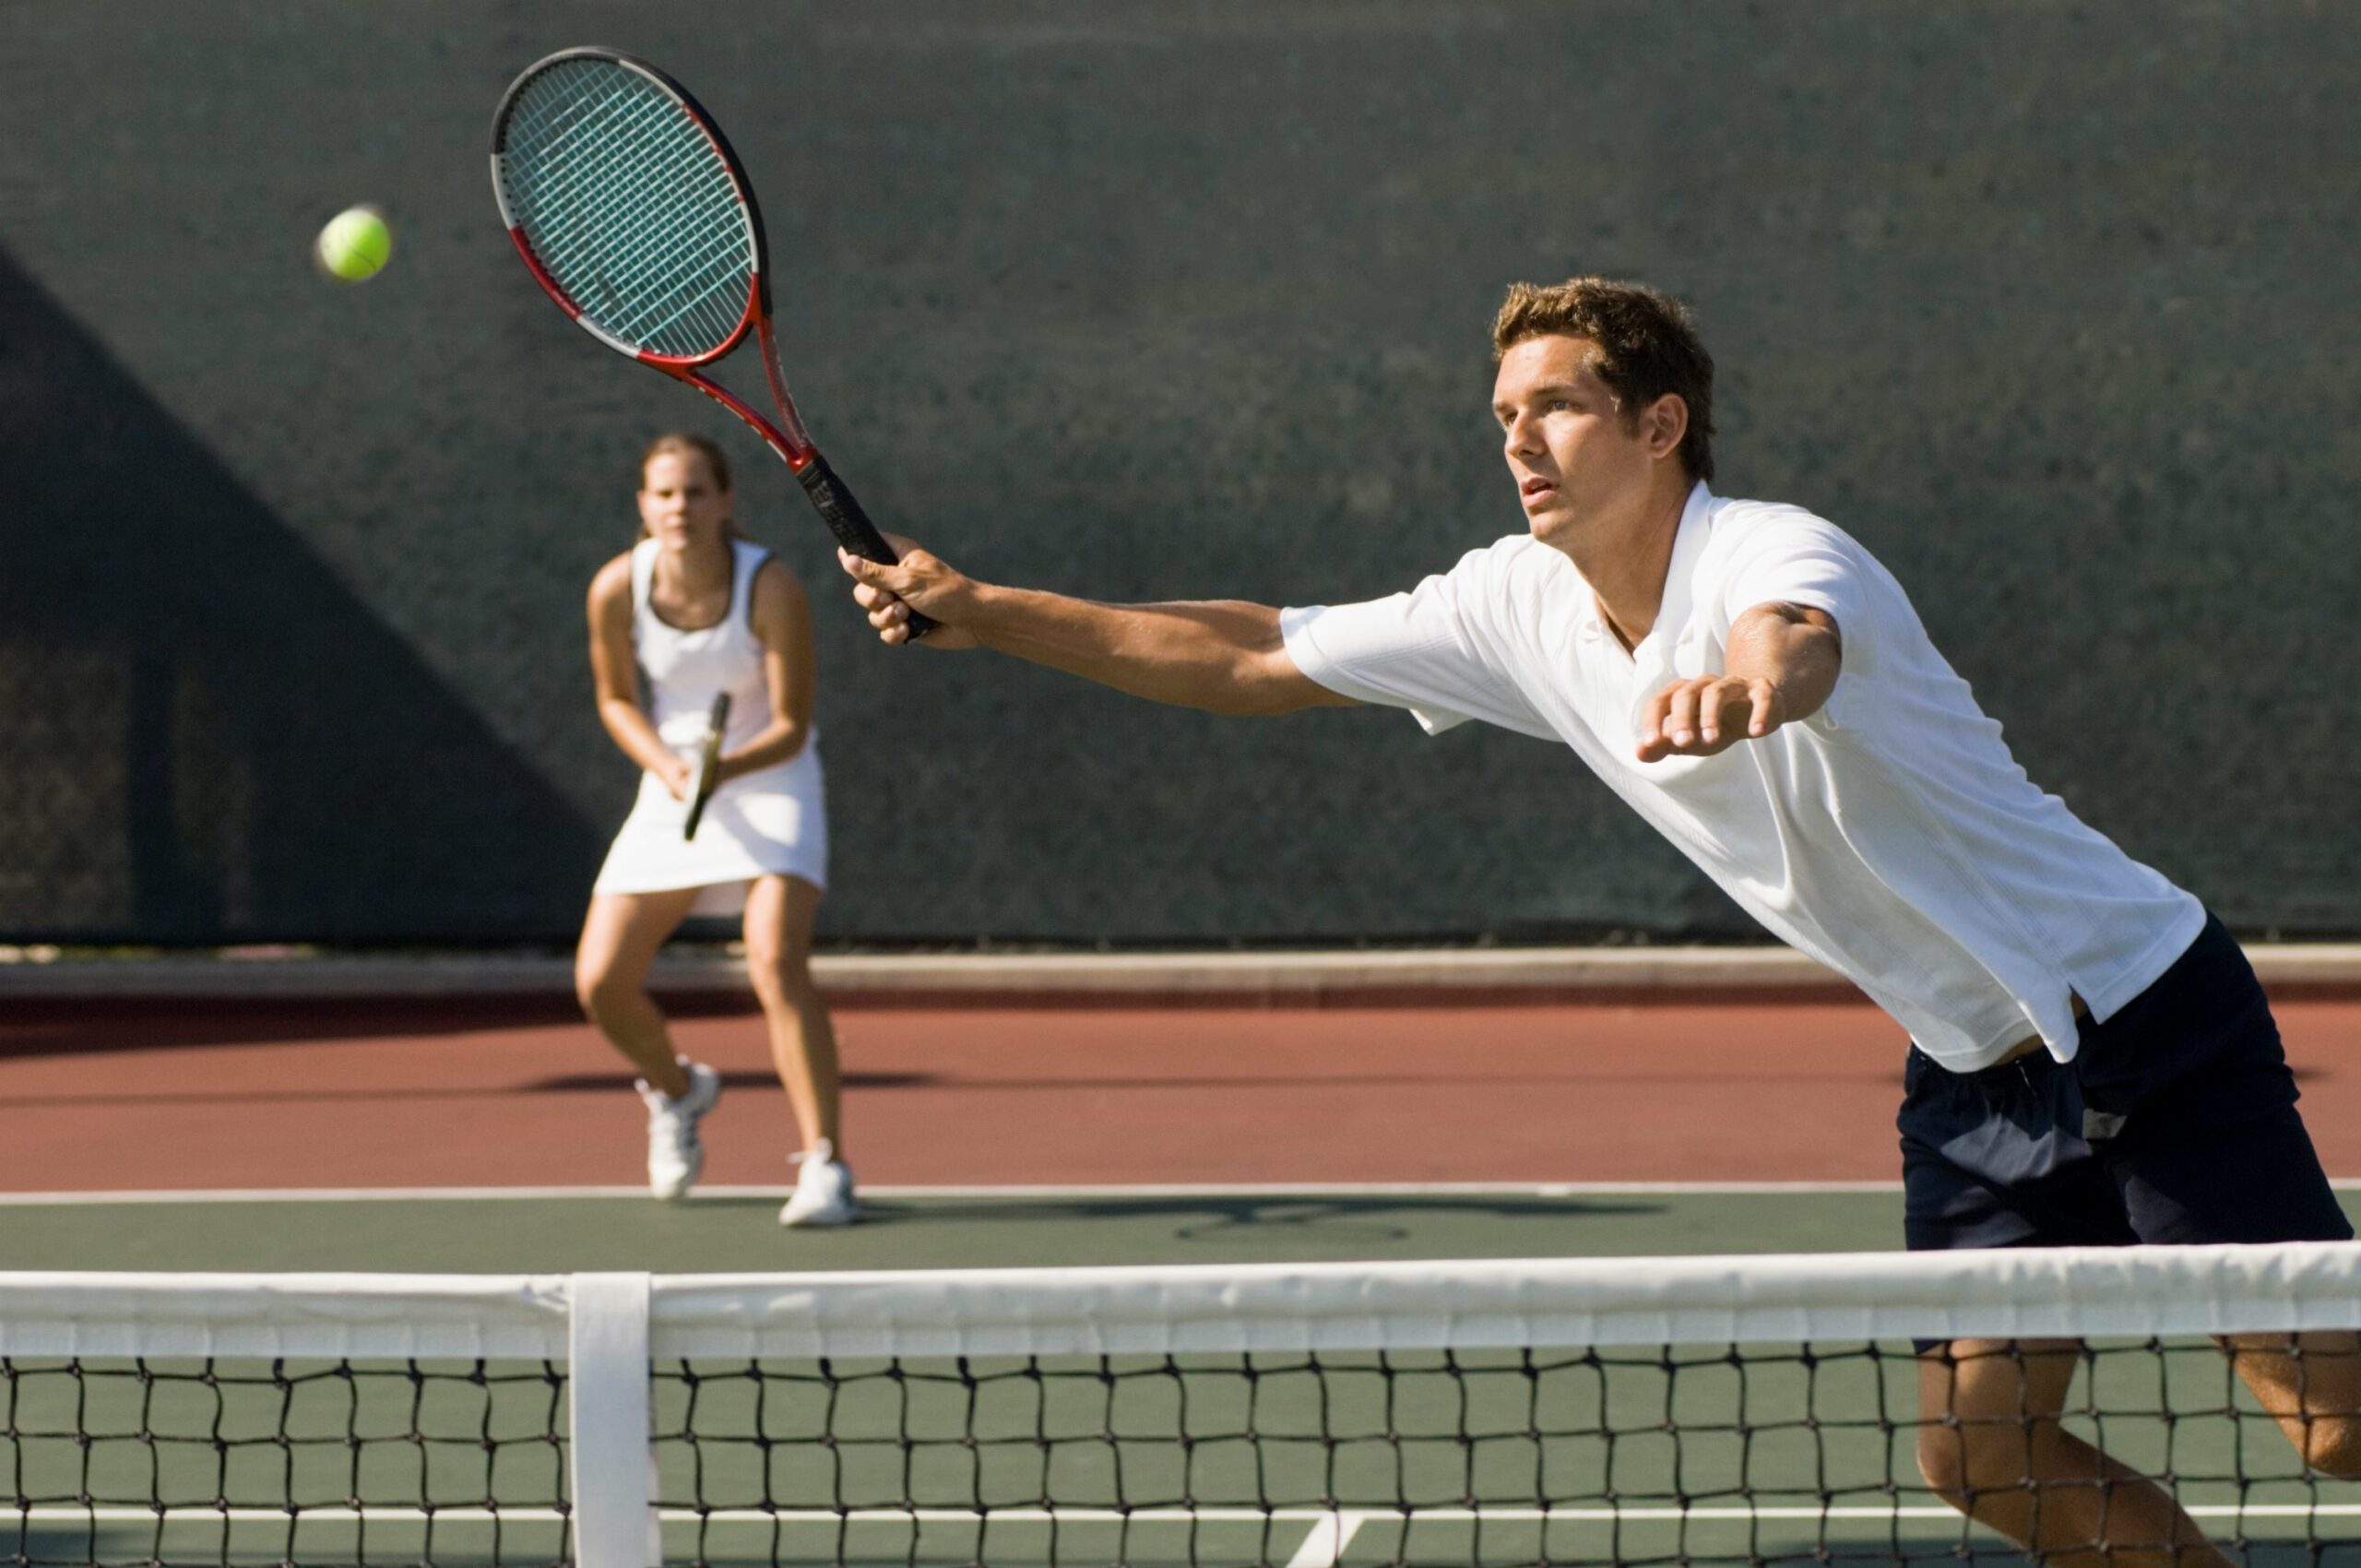 Muskelaufbau und Tennis